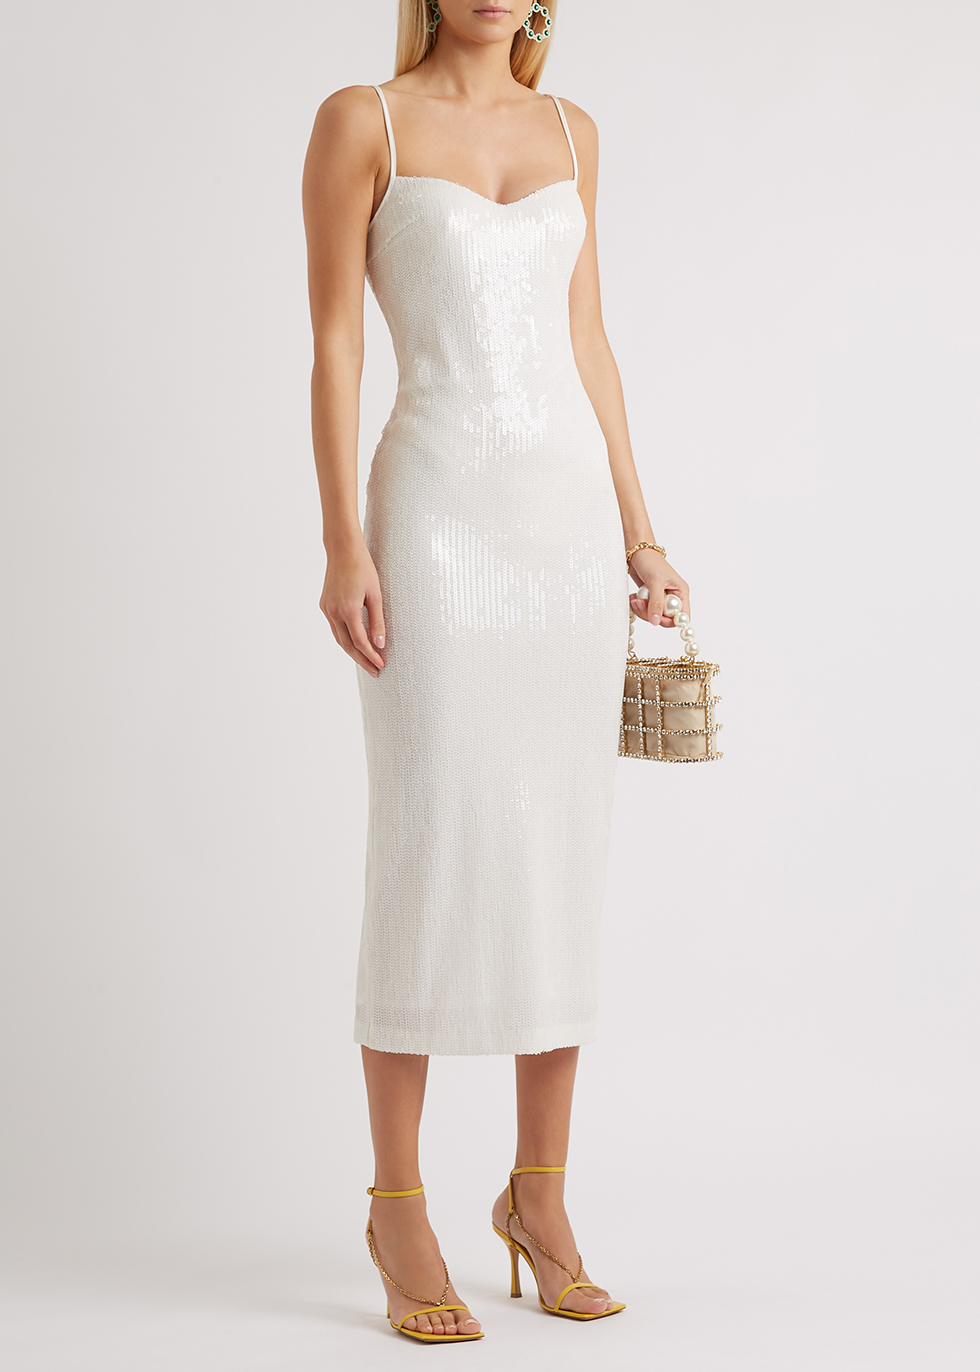 white sequin dress